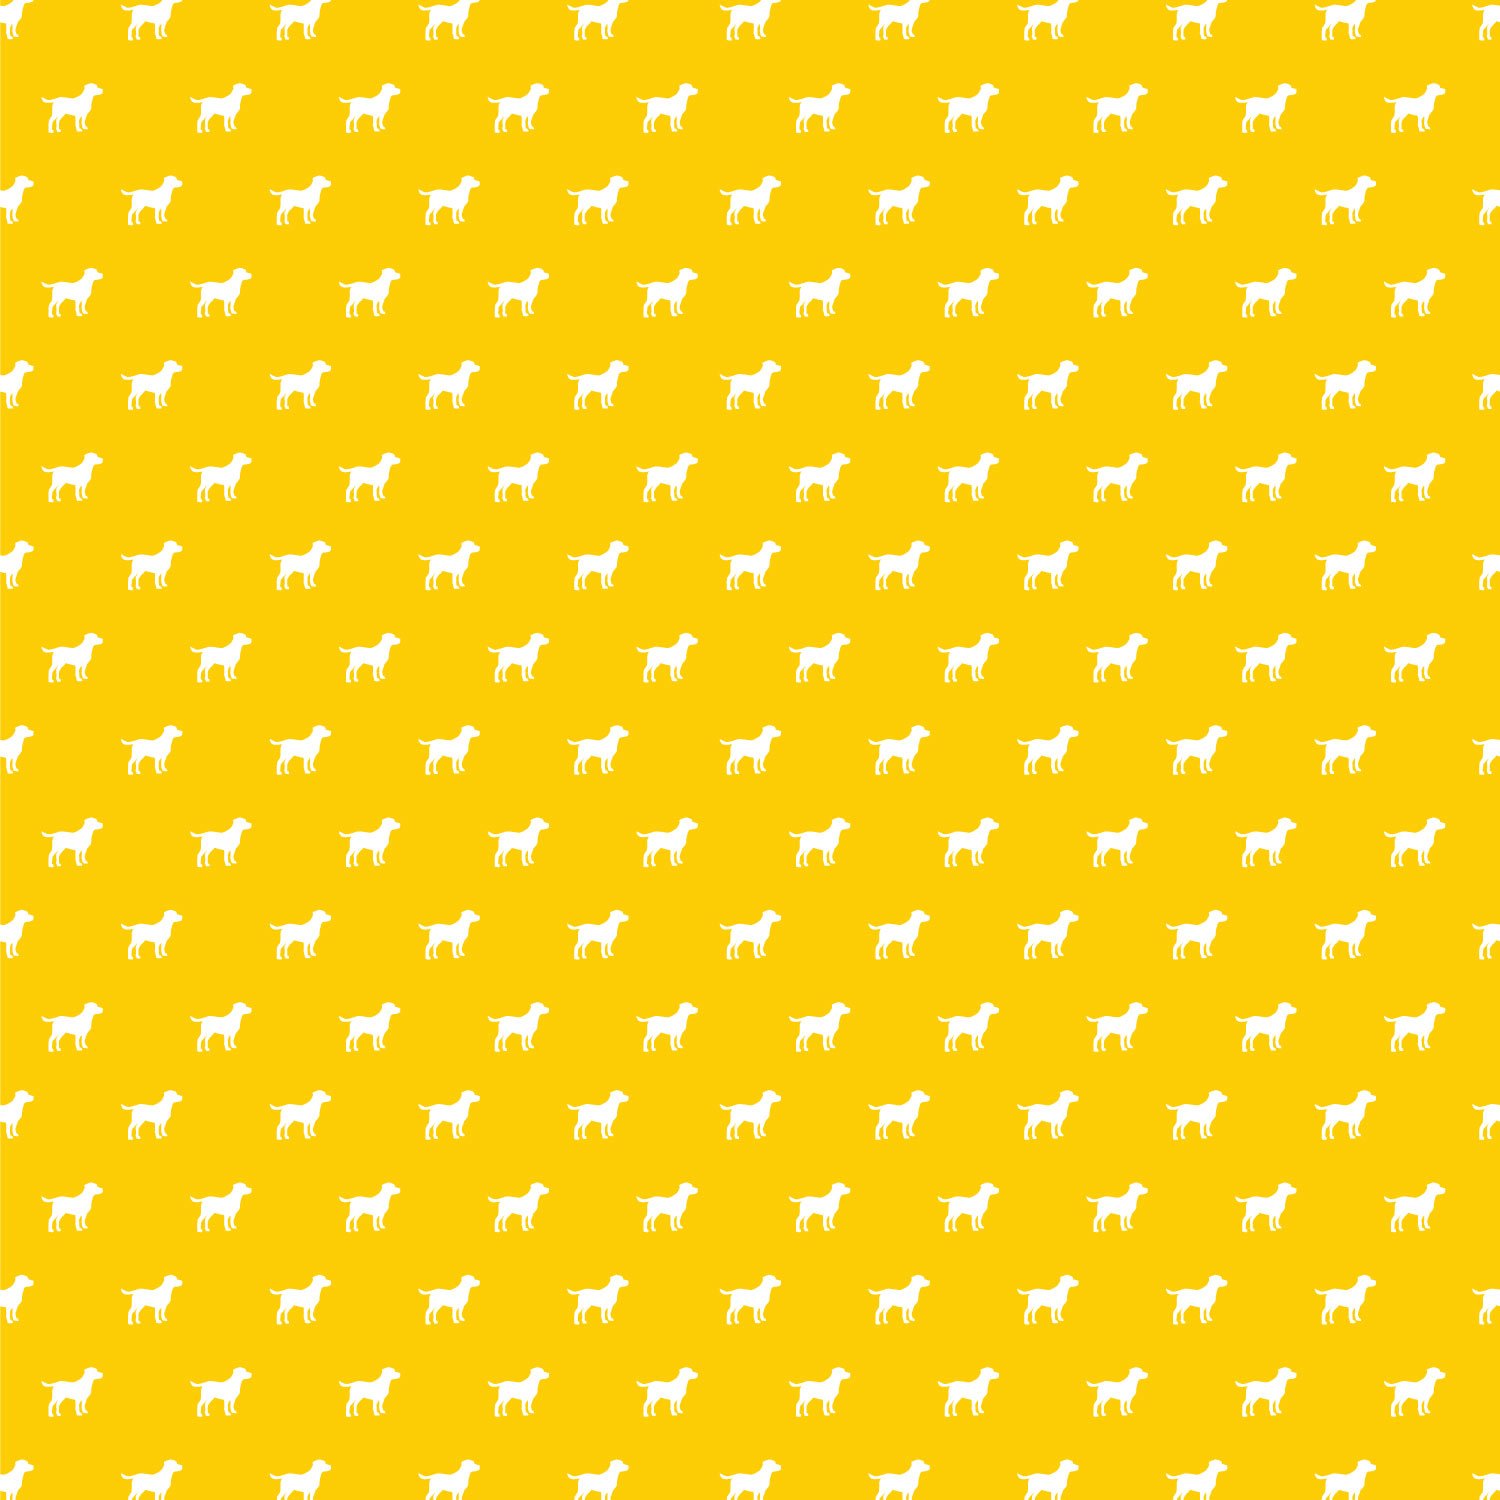 Happy Dog Premade Logo + Brand Design | Six Leaf Design | Denver, Colorado